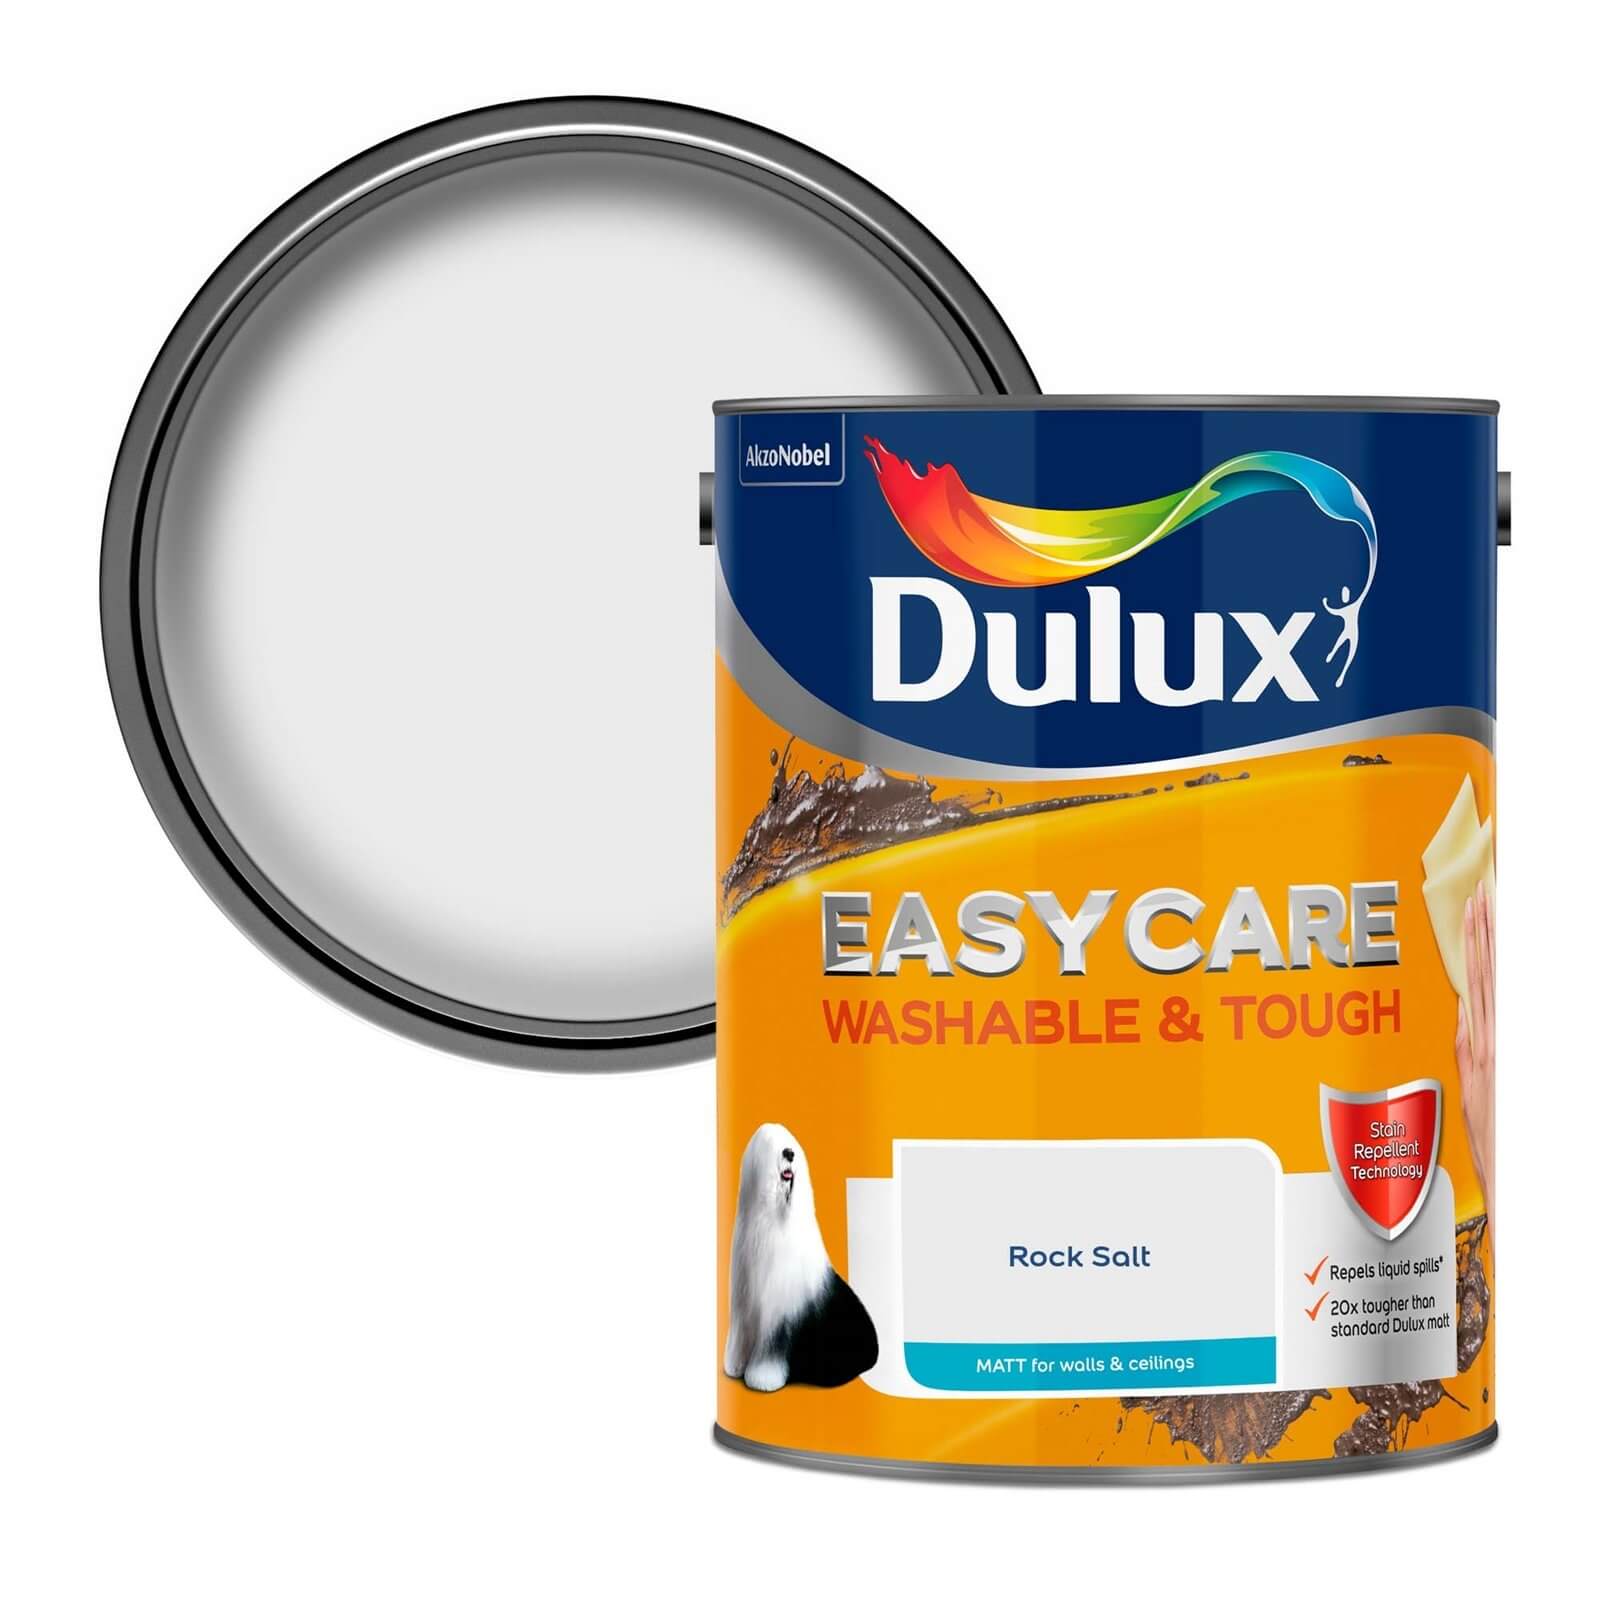 Dulux Easycare Washable & Tough Matt Paint Rock Salt - 5L